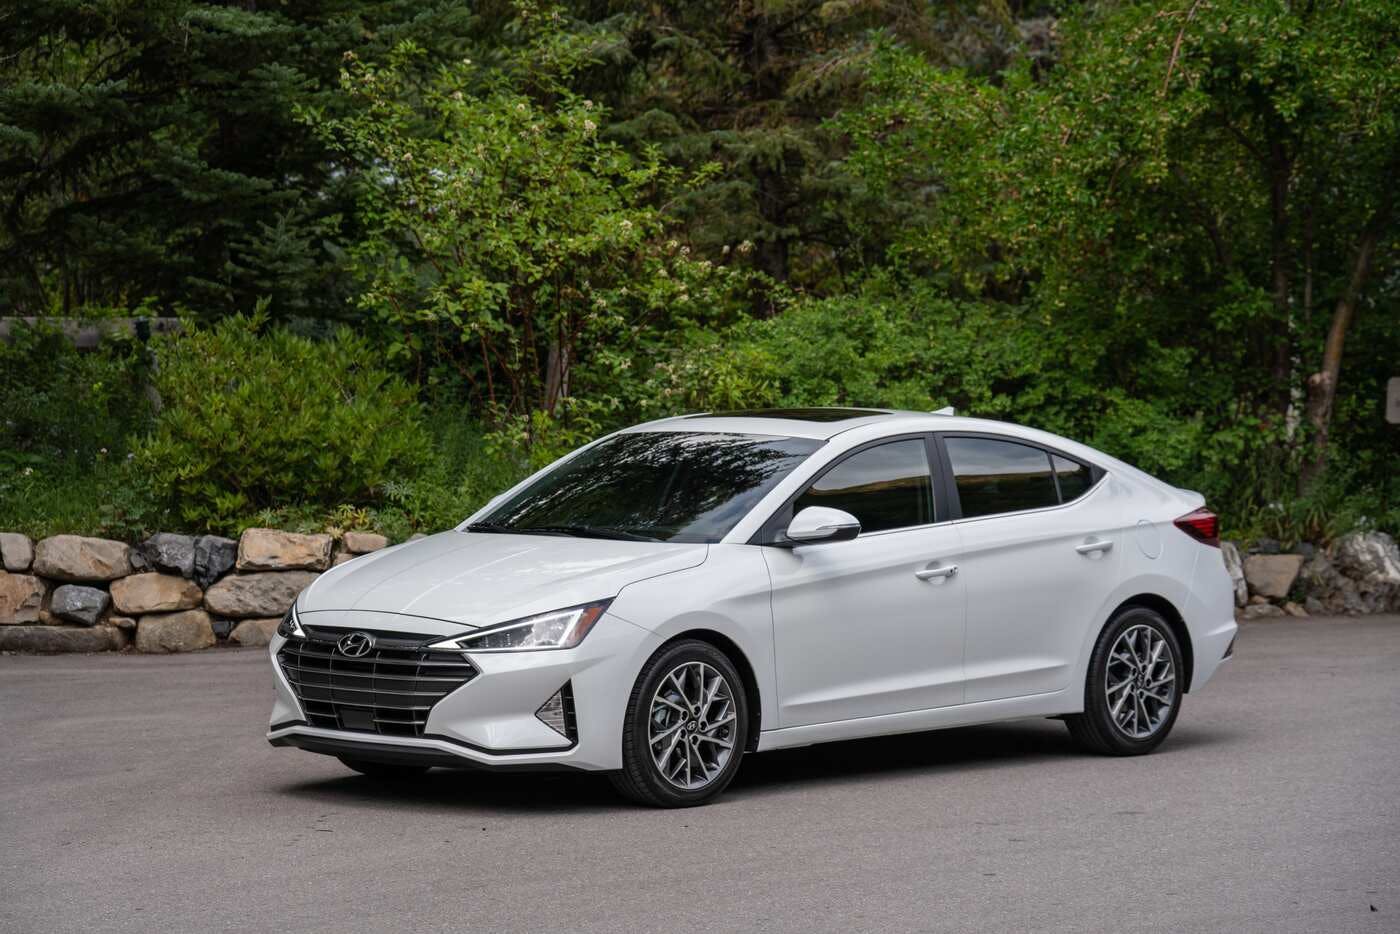 2020 Hyundai Elantra Review | Pricing, Trims & Photos - TrueCar